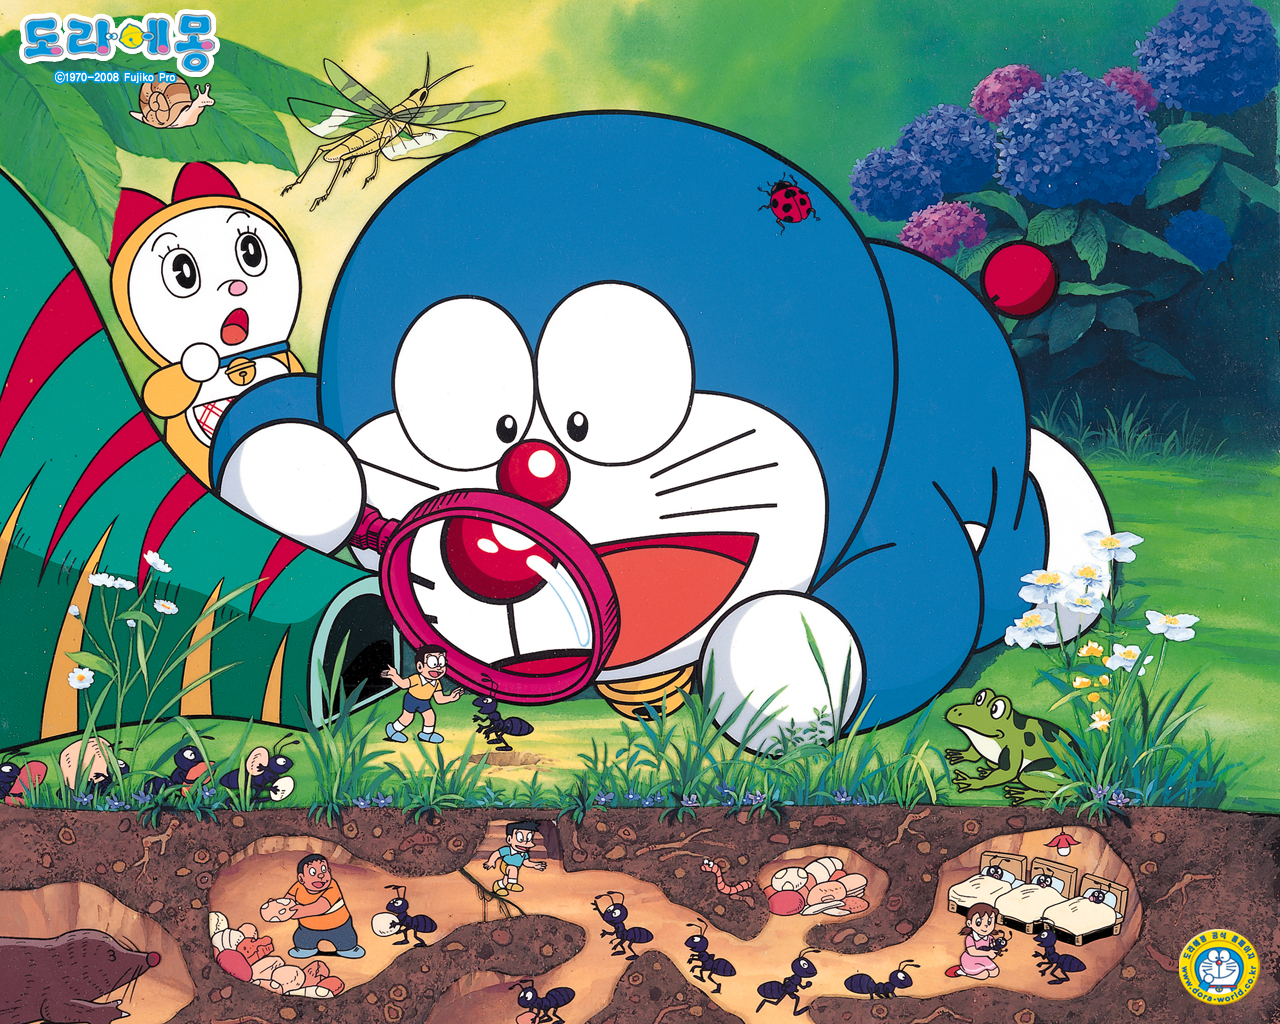 Khám phá thế giới vô tận của Doraemon với hàng loạt hình ảnh đầy màu sắc và hài hước. Thử xem ngay nhé!